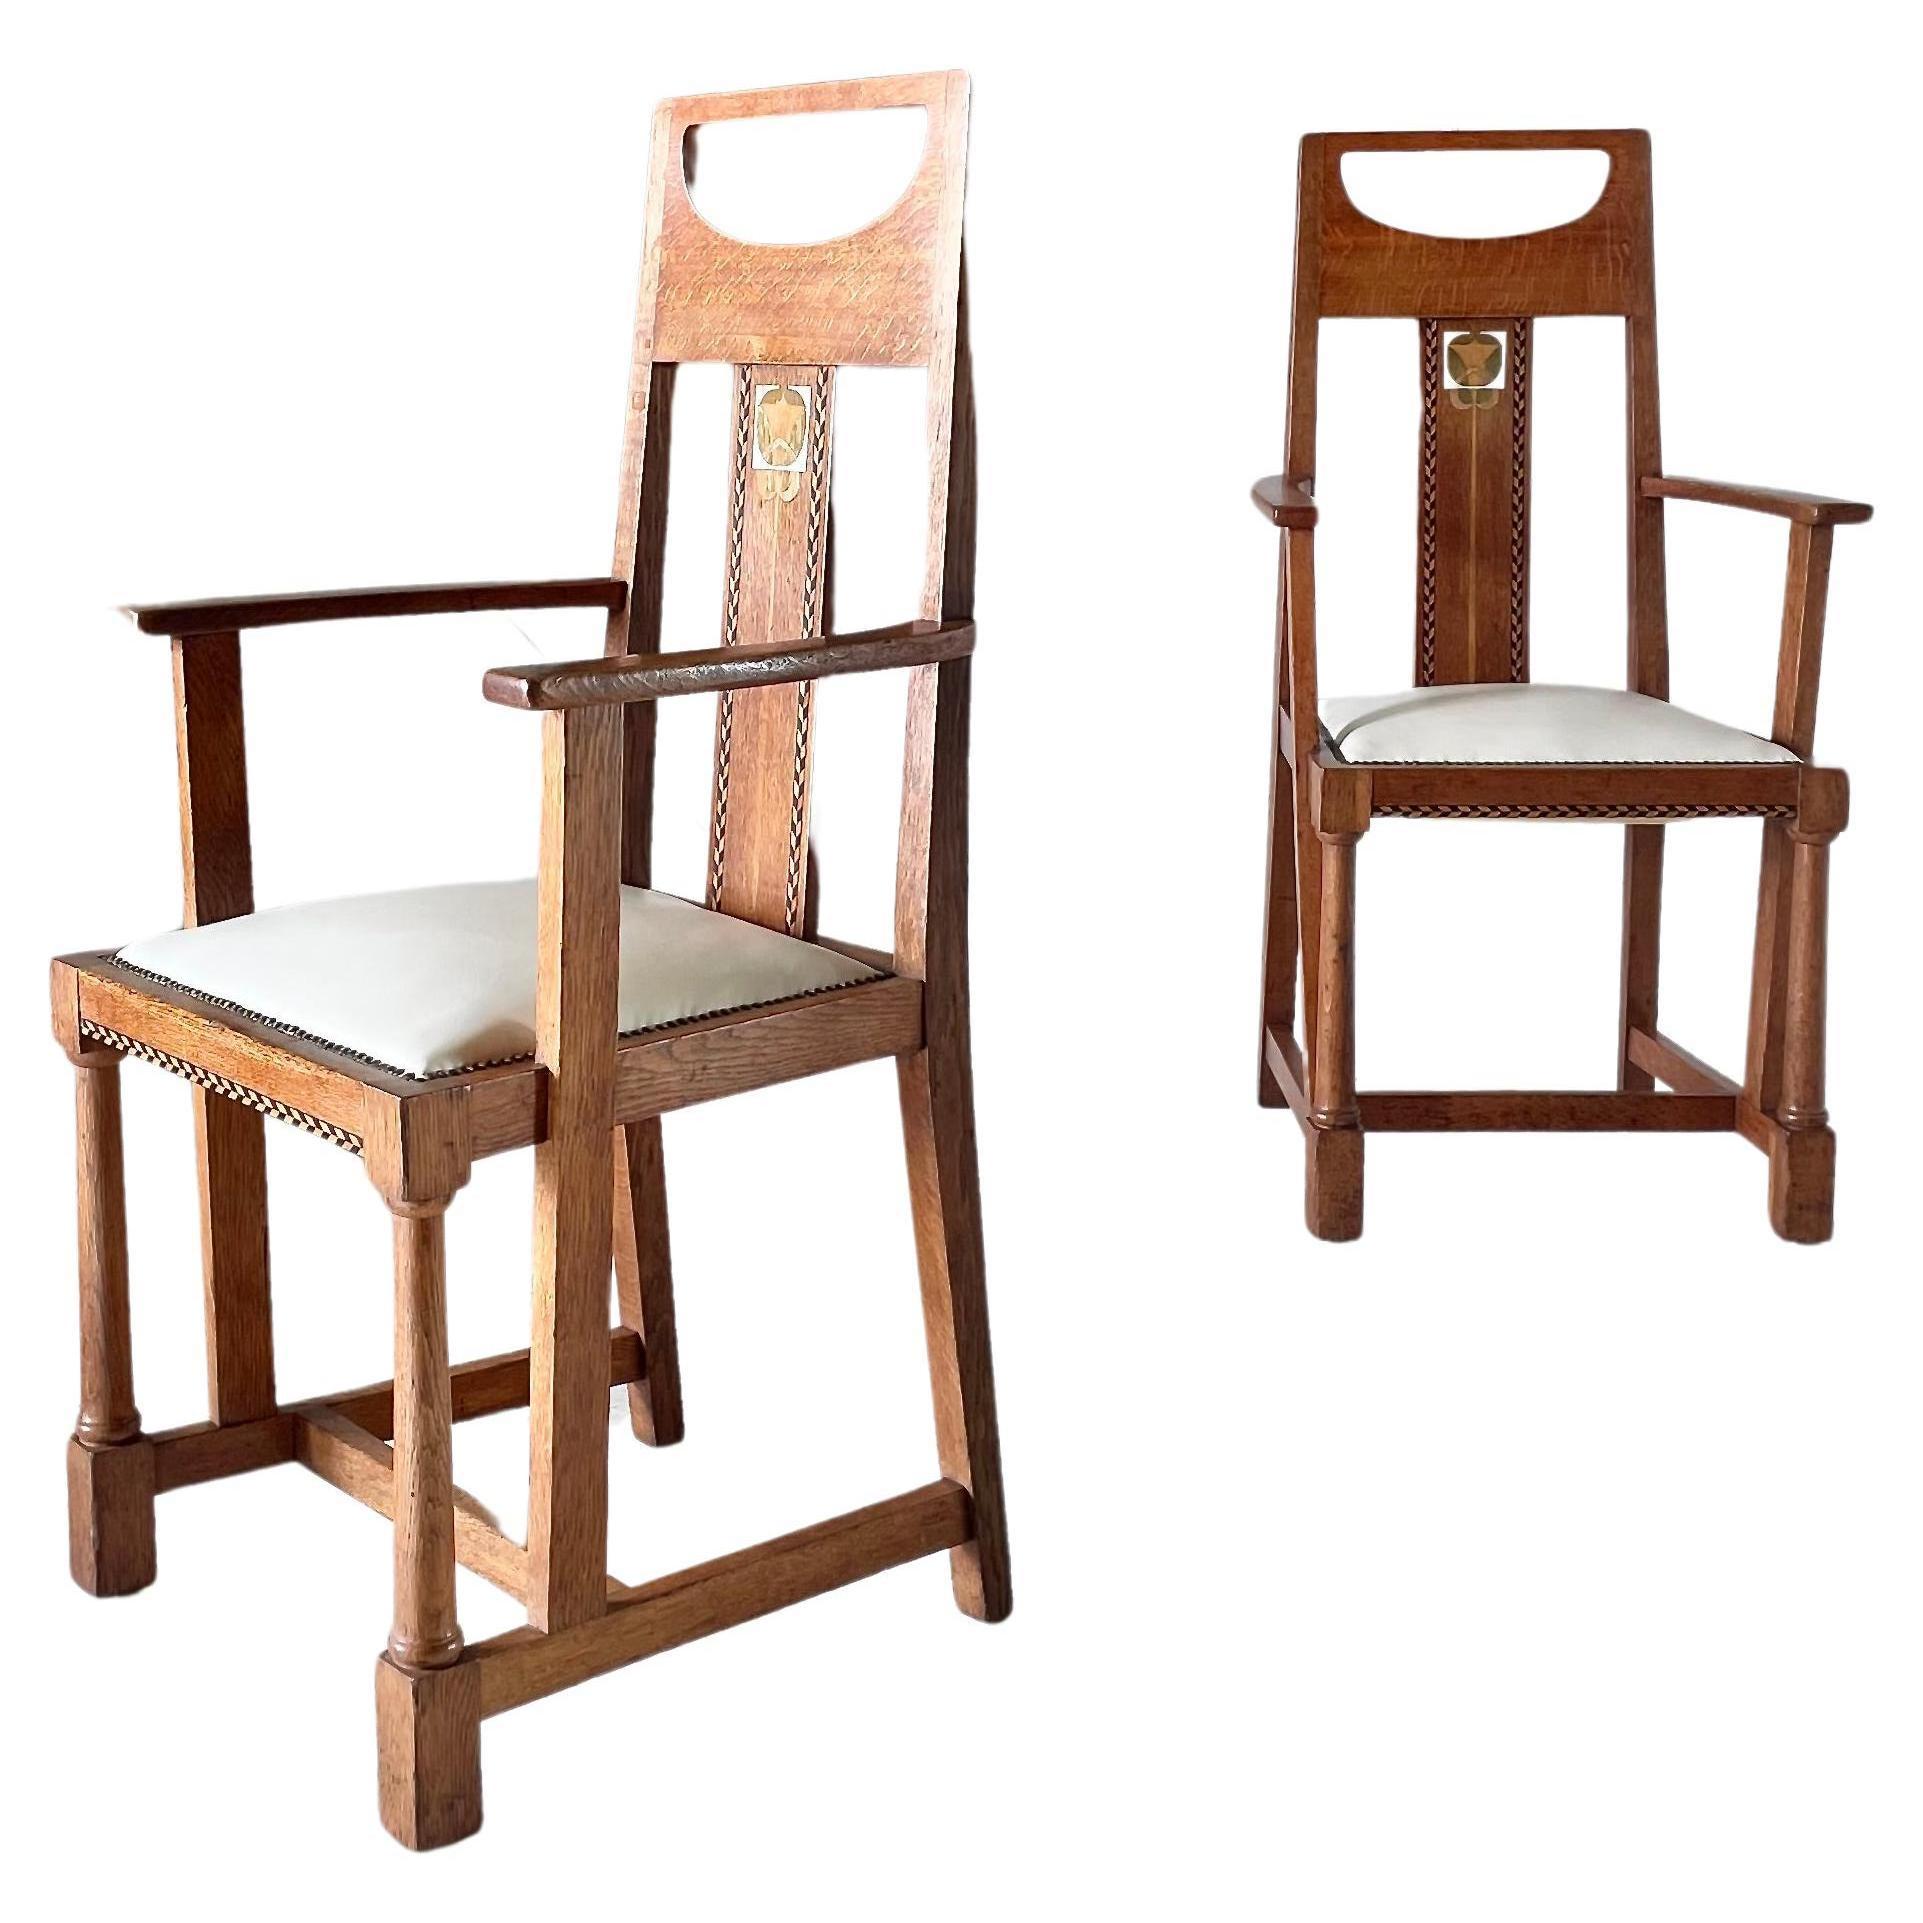 Paire de chaises sculptées Arts and Crafts conçues par G.M. Ellwood 1905